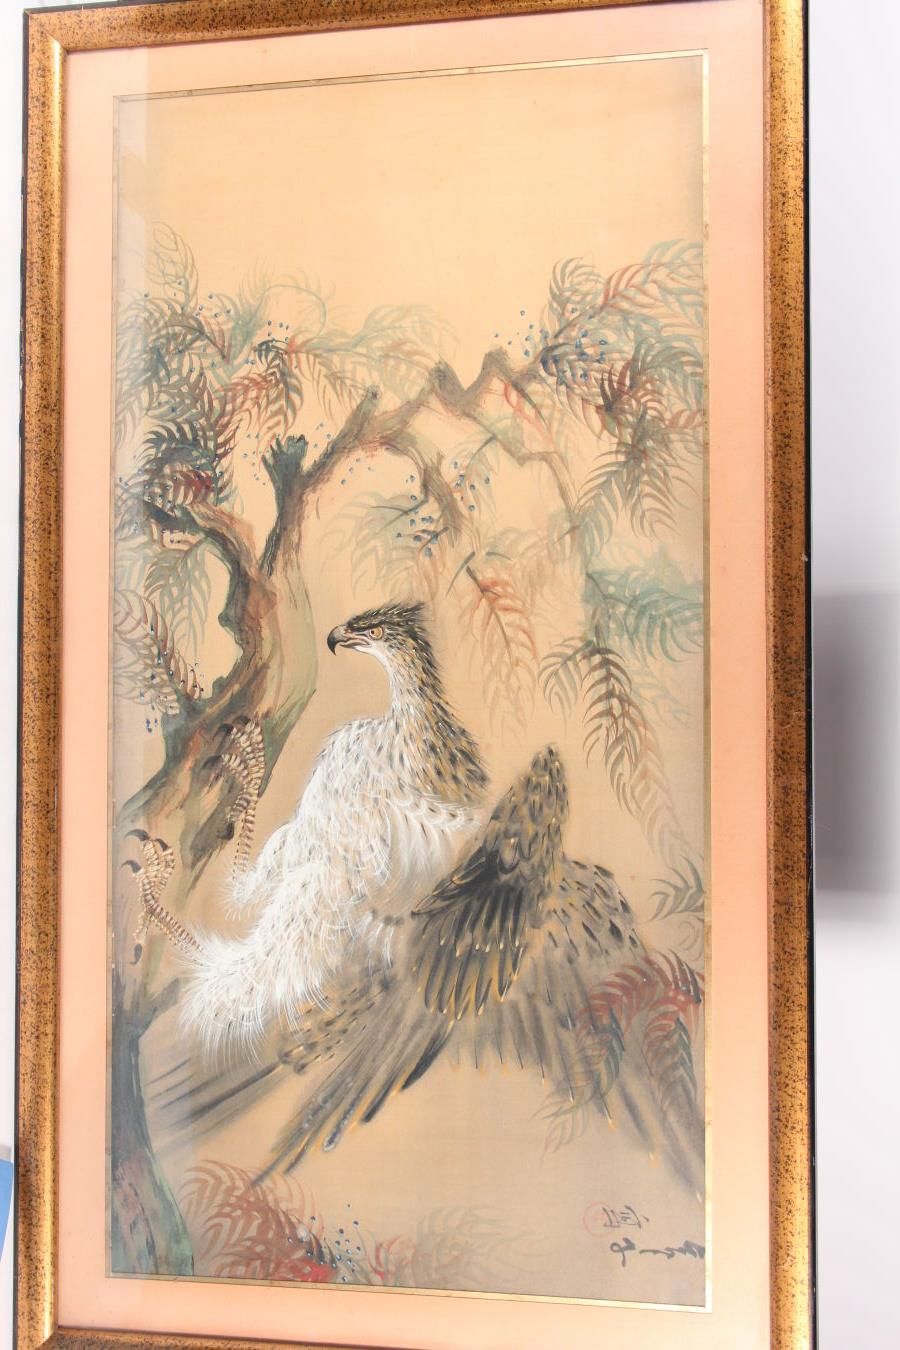 Null 水墨和水粉画在丝绸上 
日本，20世纪
装饰着一只栖息在树上的鹰，右上方有签名和印章
41 x 80厘米